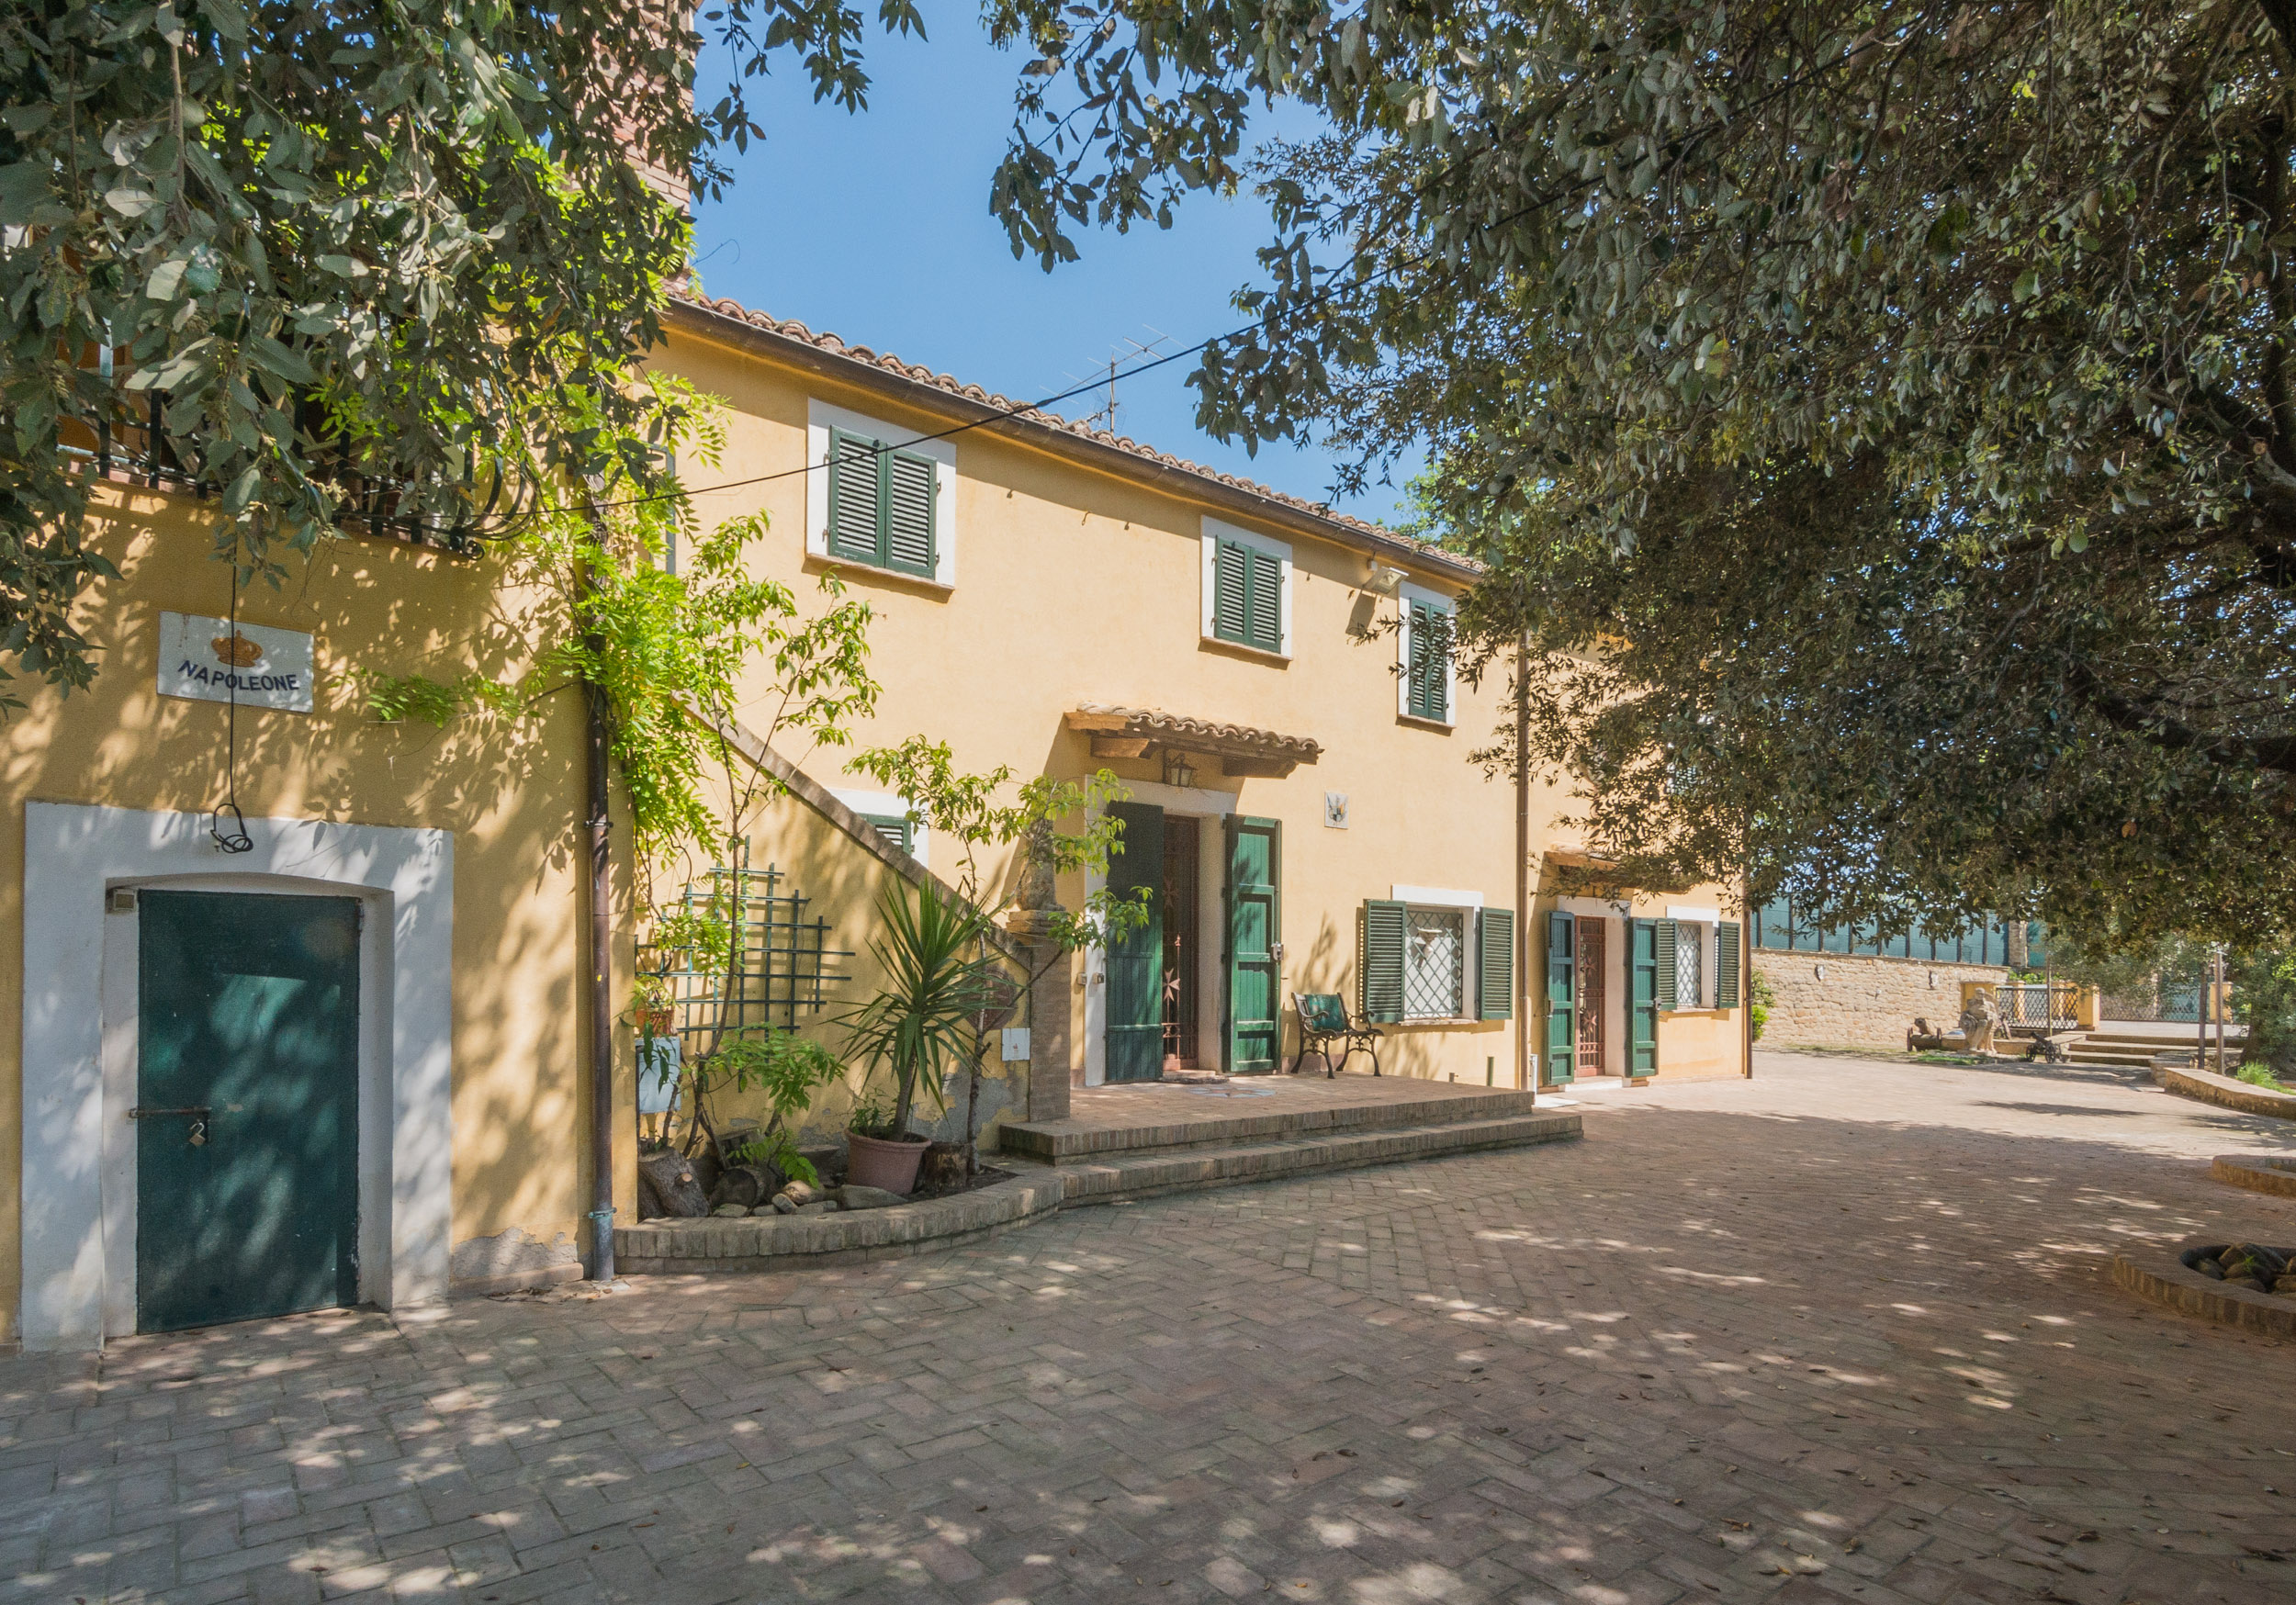 Villa Terrazza for sale in Le Marche Italy